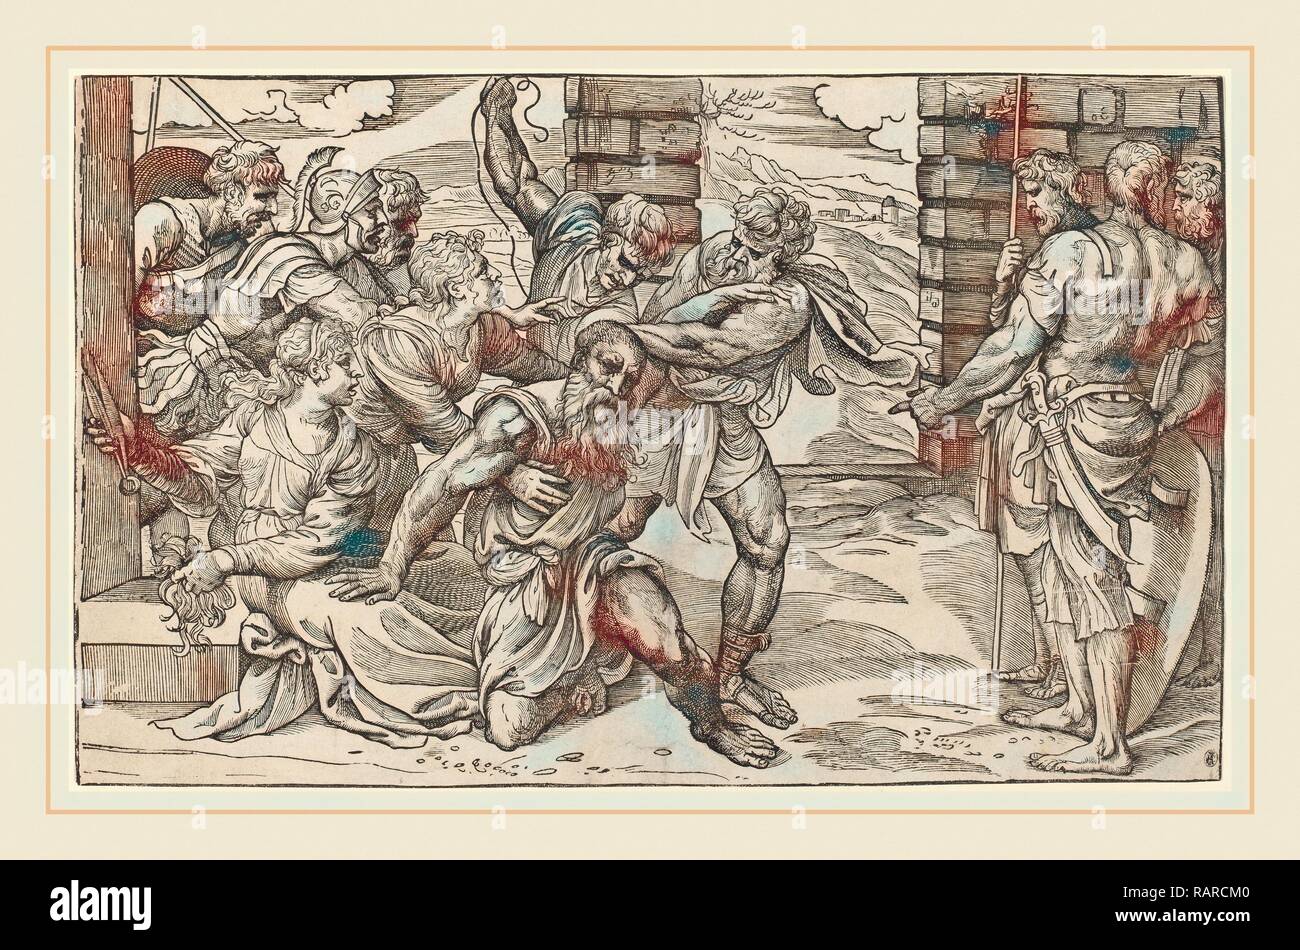 Niccolò Boldrini après Titien (italien, 1510-1566 ou après), Samson et Dalila, ch. 1540, gravure sur bois. Repensé Banque D'Images